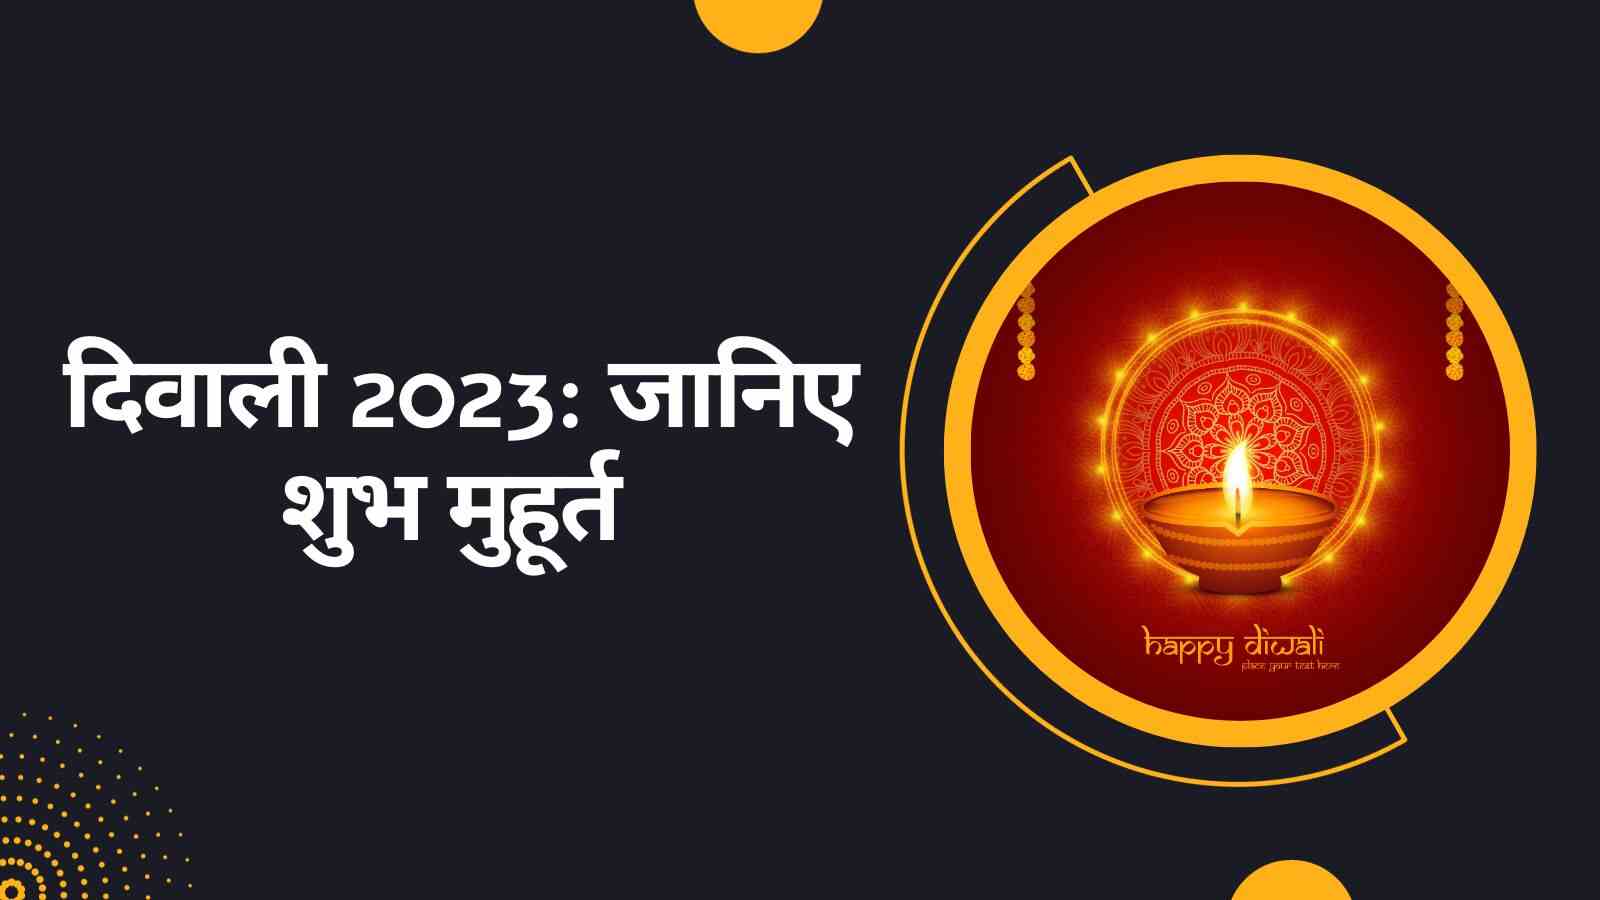 Diwali 2023 Date इस साल कब है दिवाली जानिए शुभ मुहूर्त, महत्वपूर्ण तिथियां और महत्व